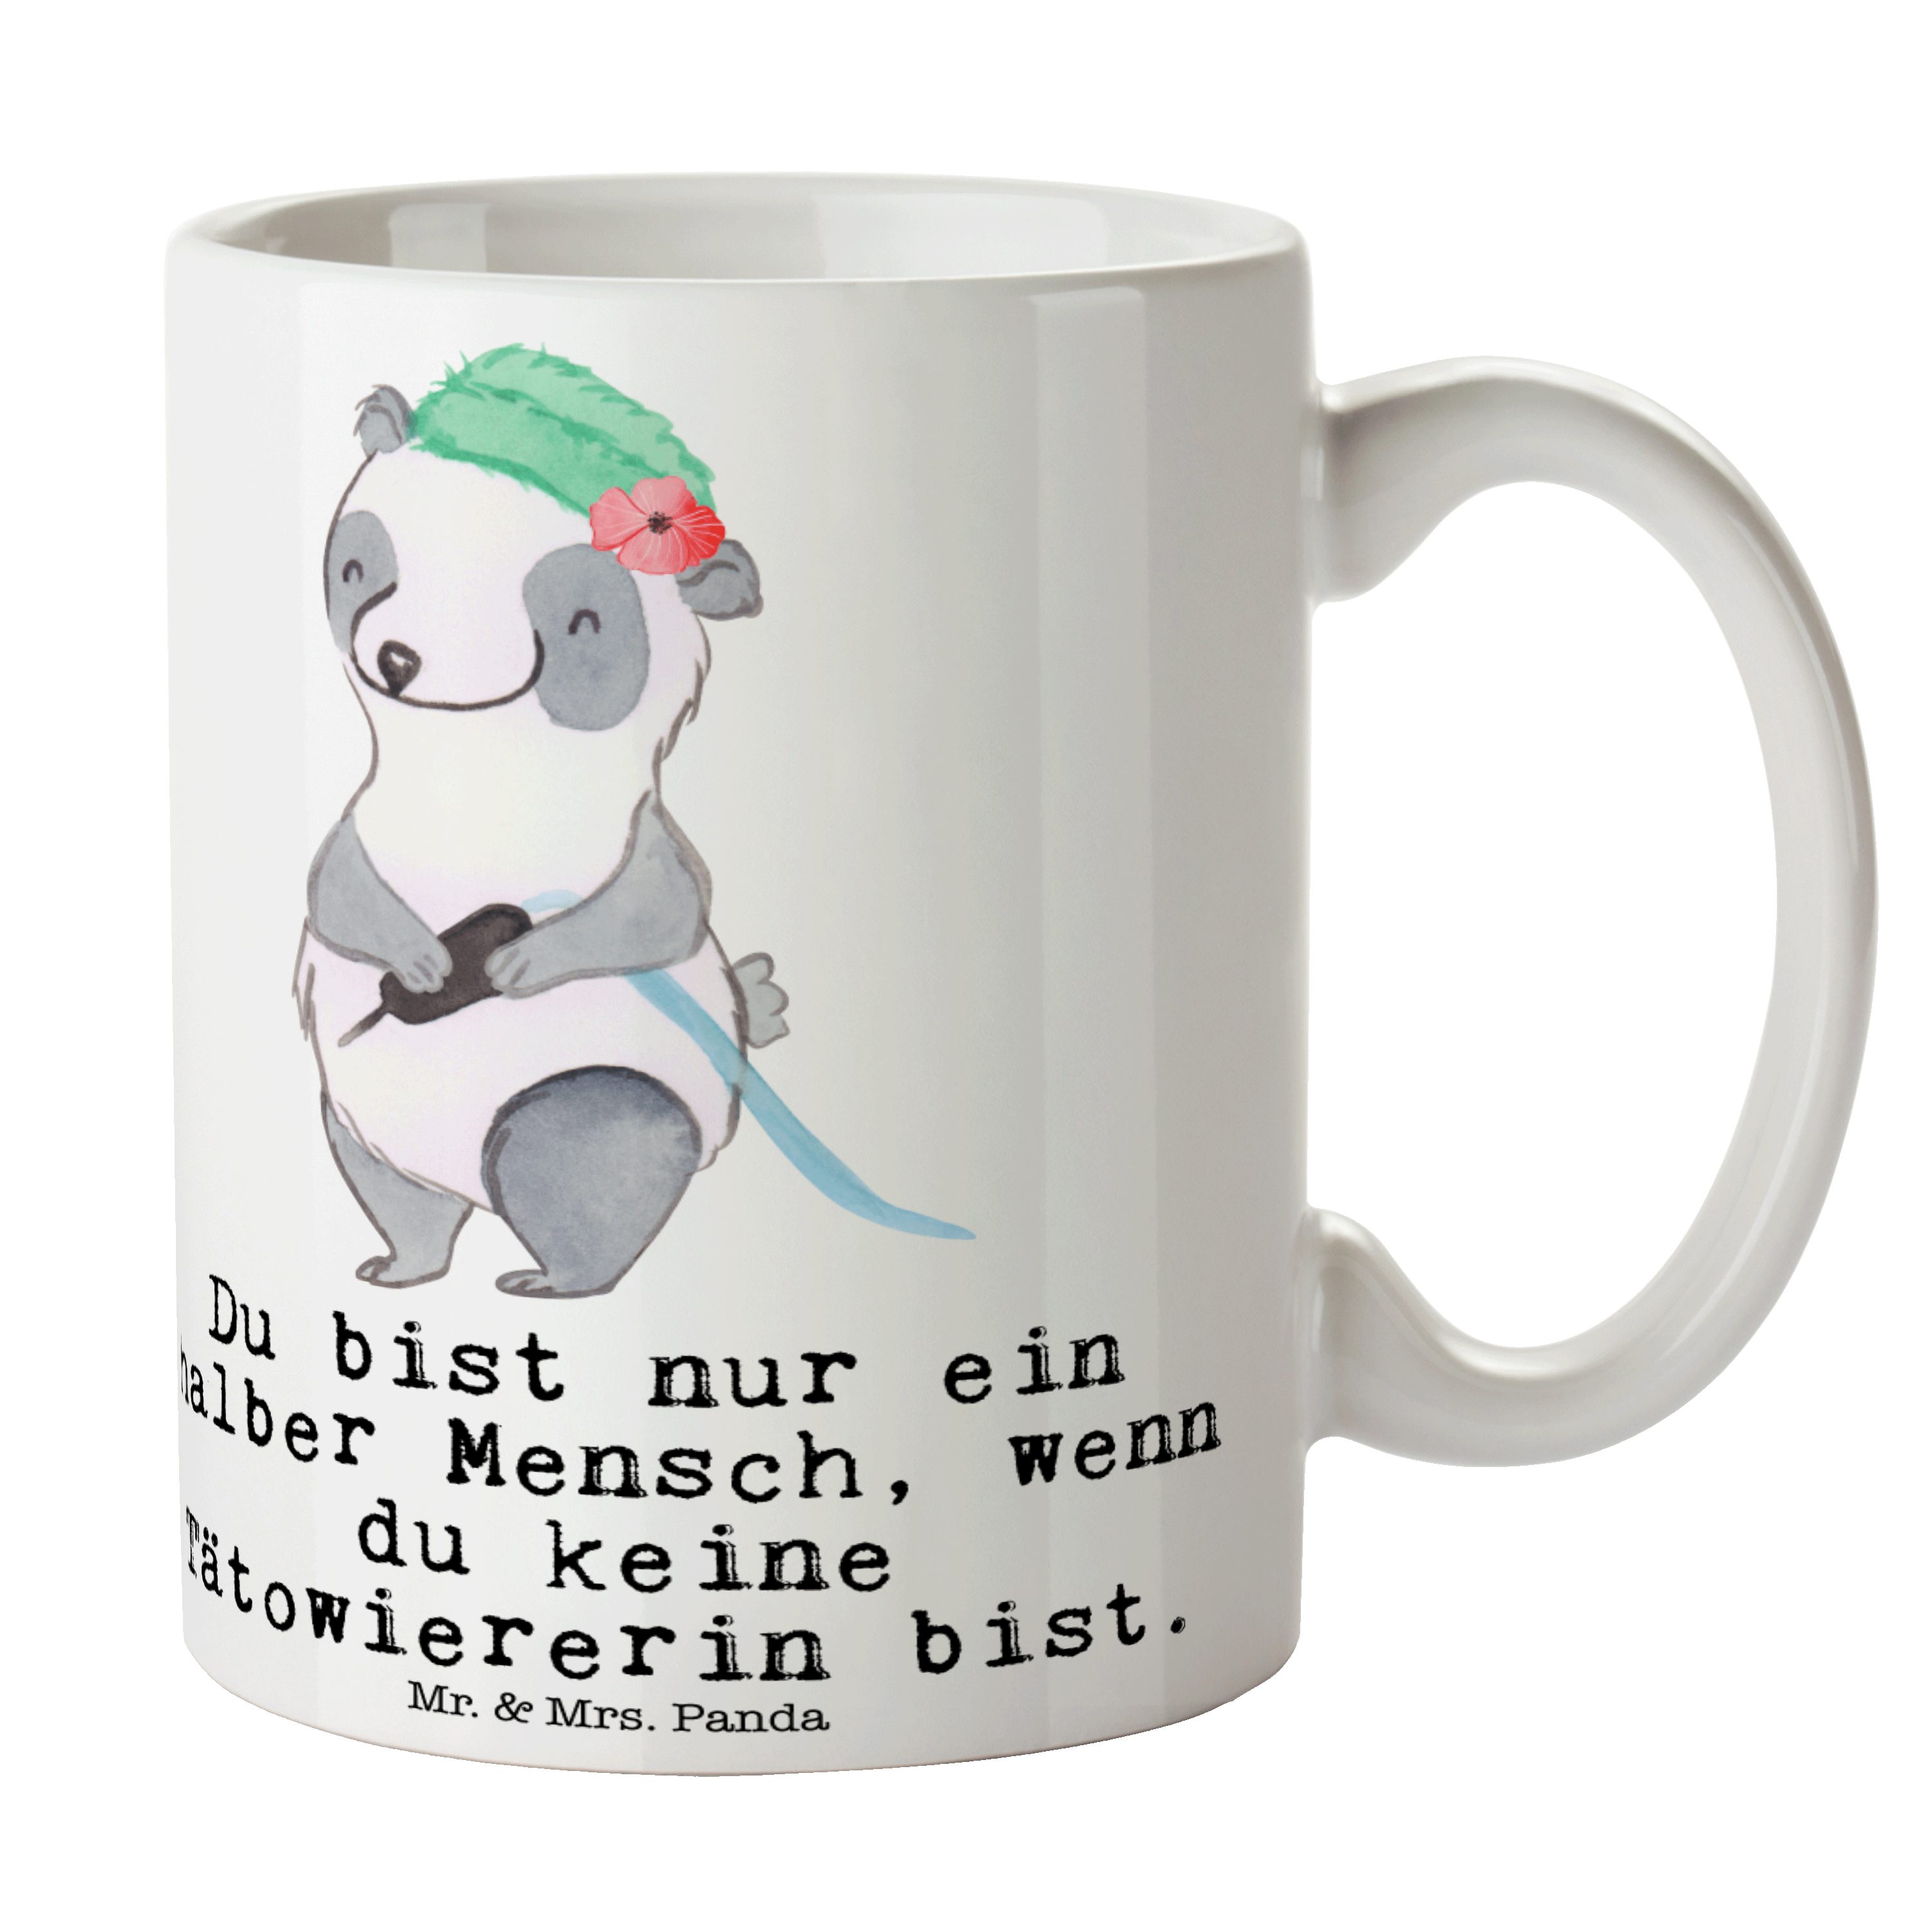 Mr. & Mrs. Panda Tasse Tätowiererin mit Herz - Weiß - Geschenk, Tasse Motive, Teebecher, Ber, Keramik